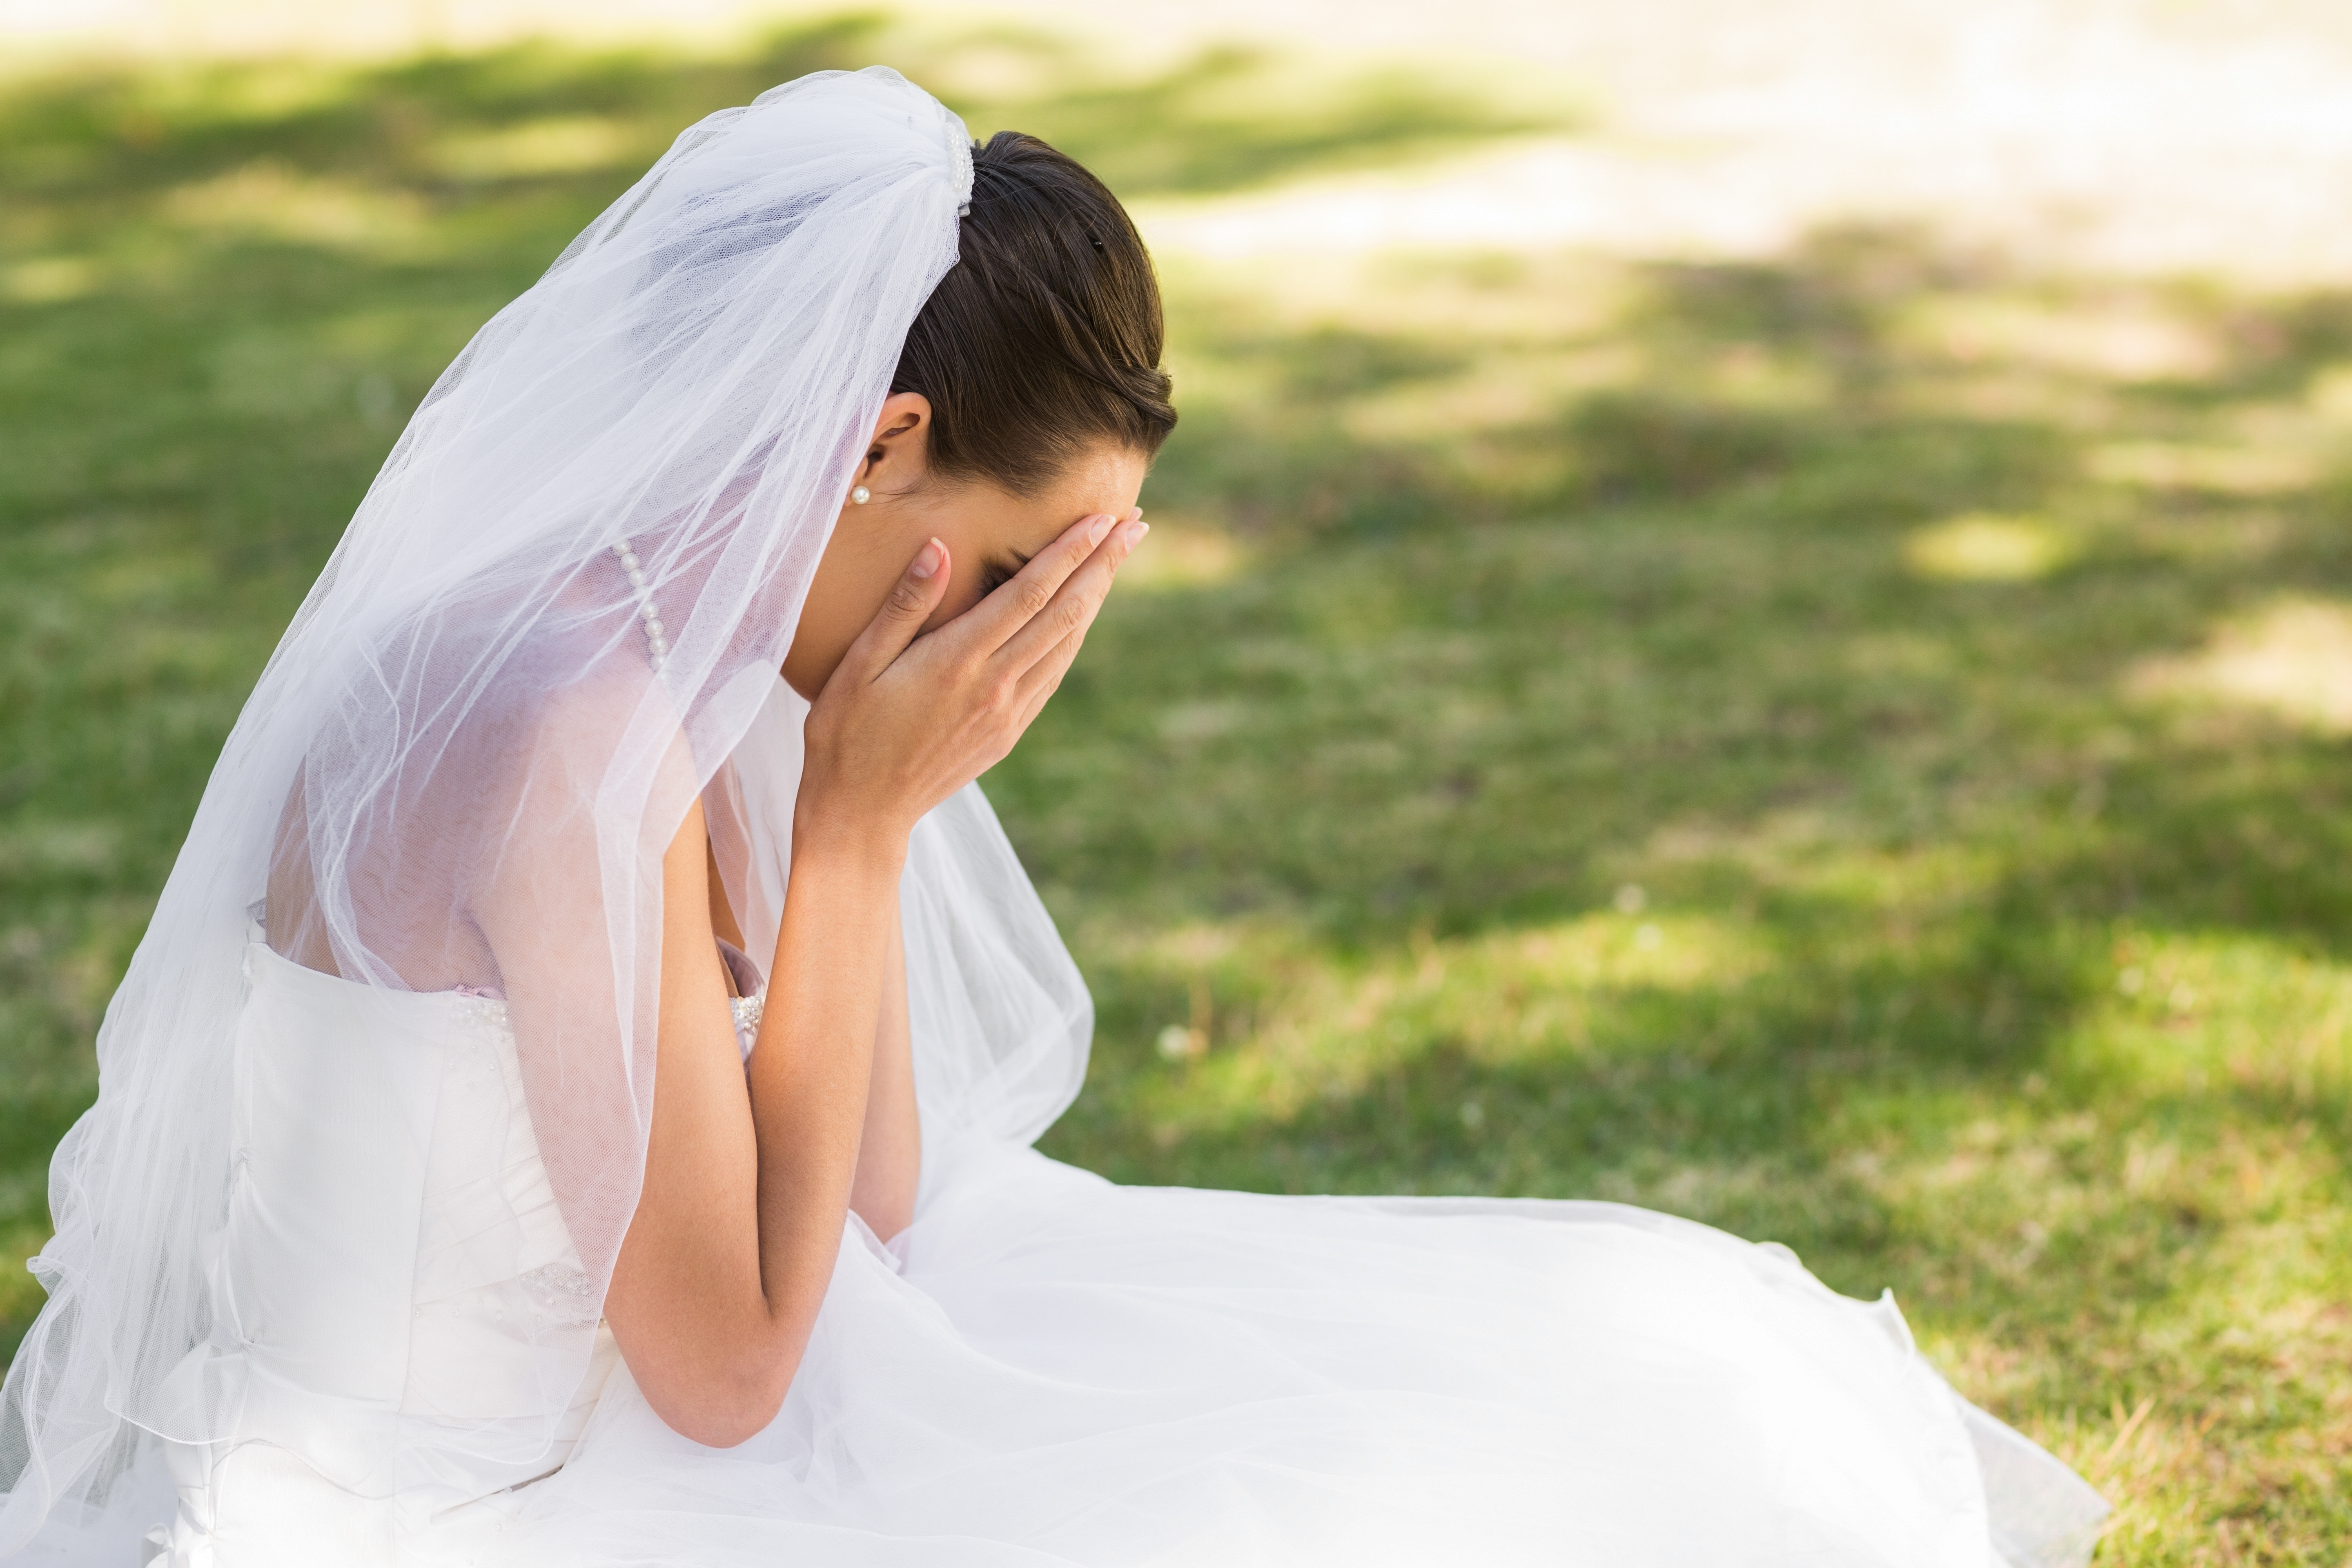 Une mariée pleurant en s'asseyant sur le sol | Source : Shutterstock